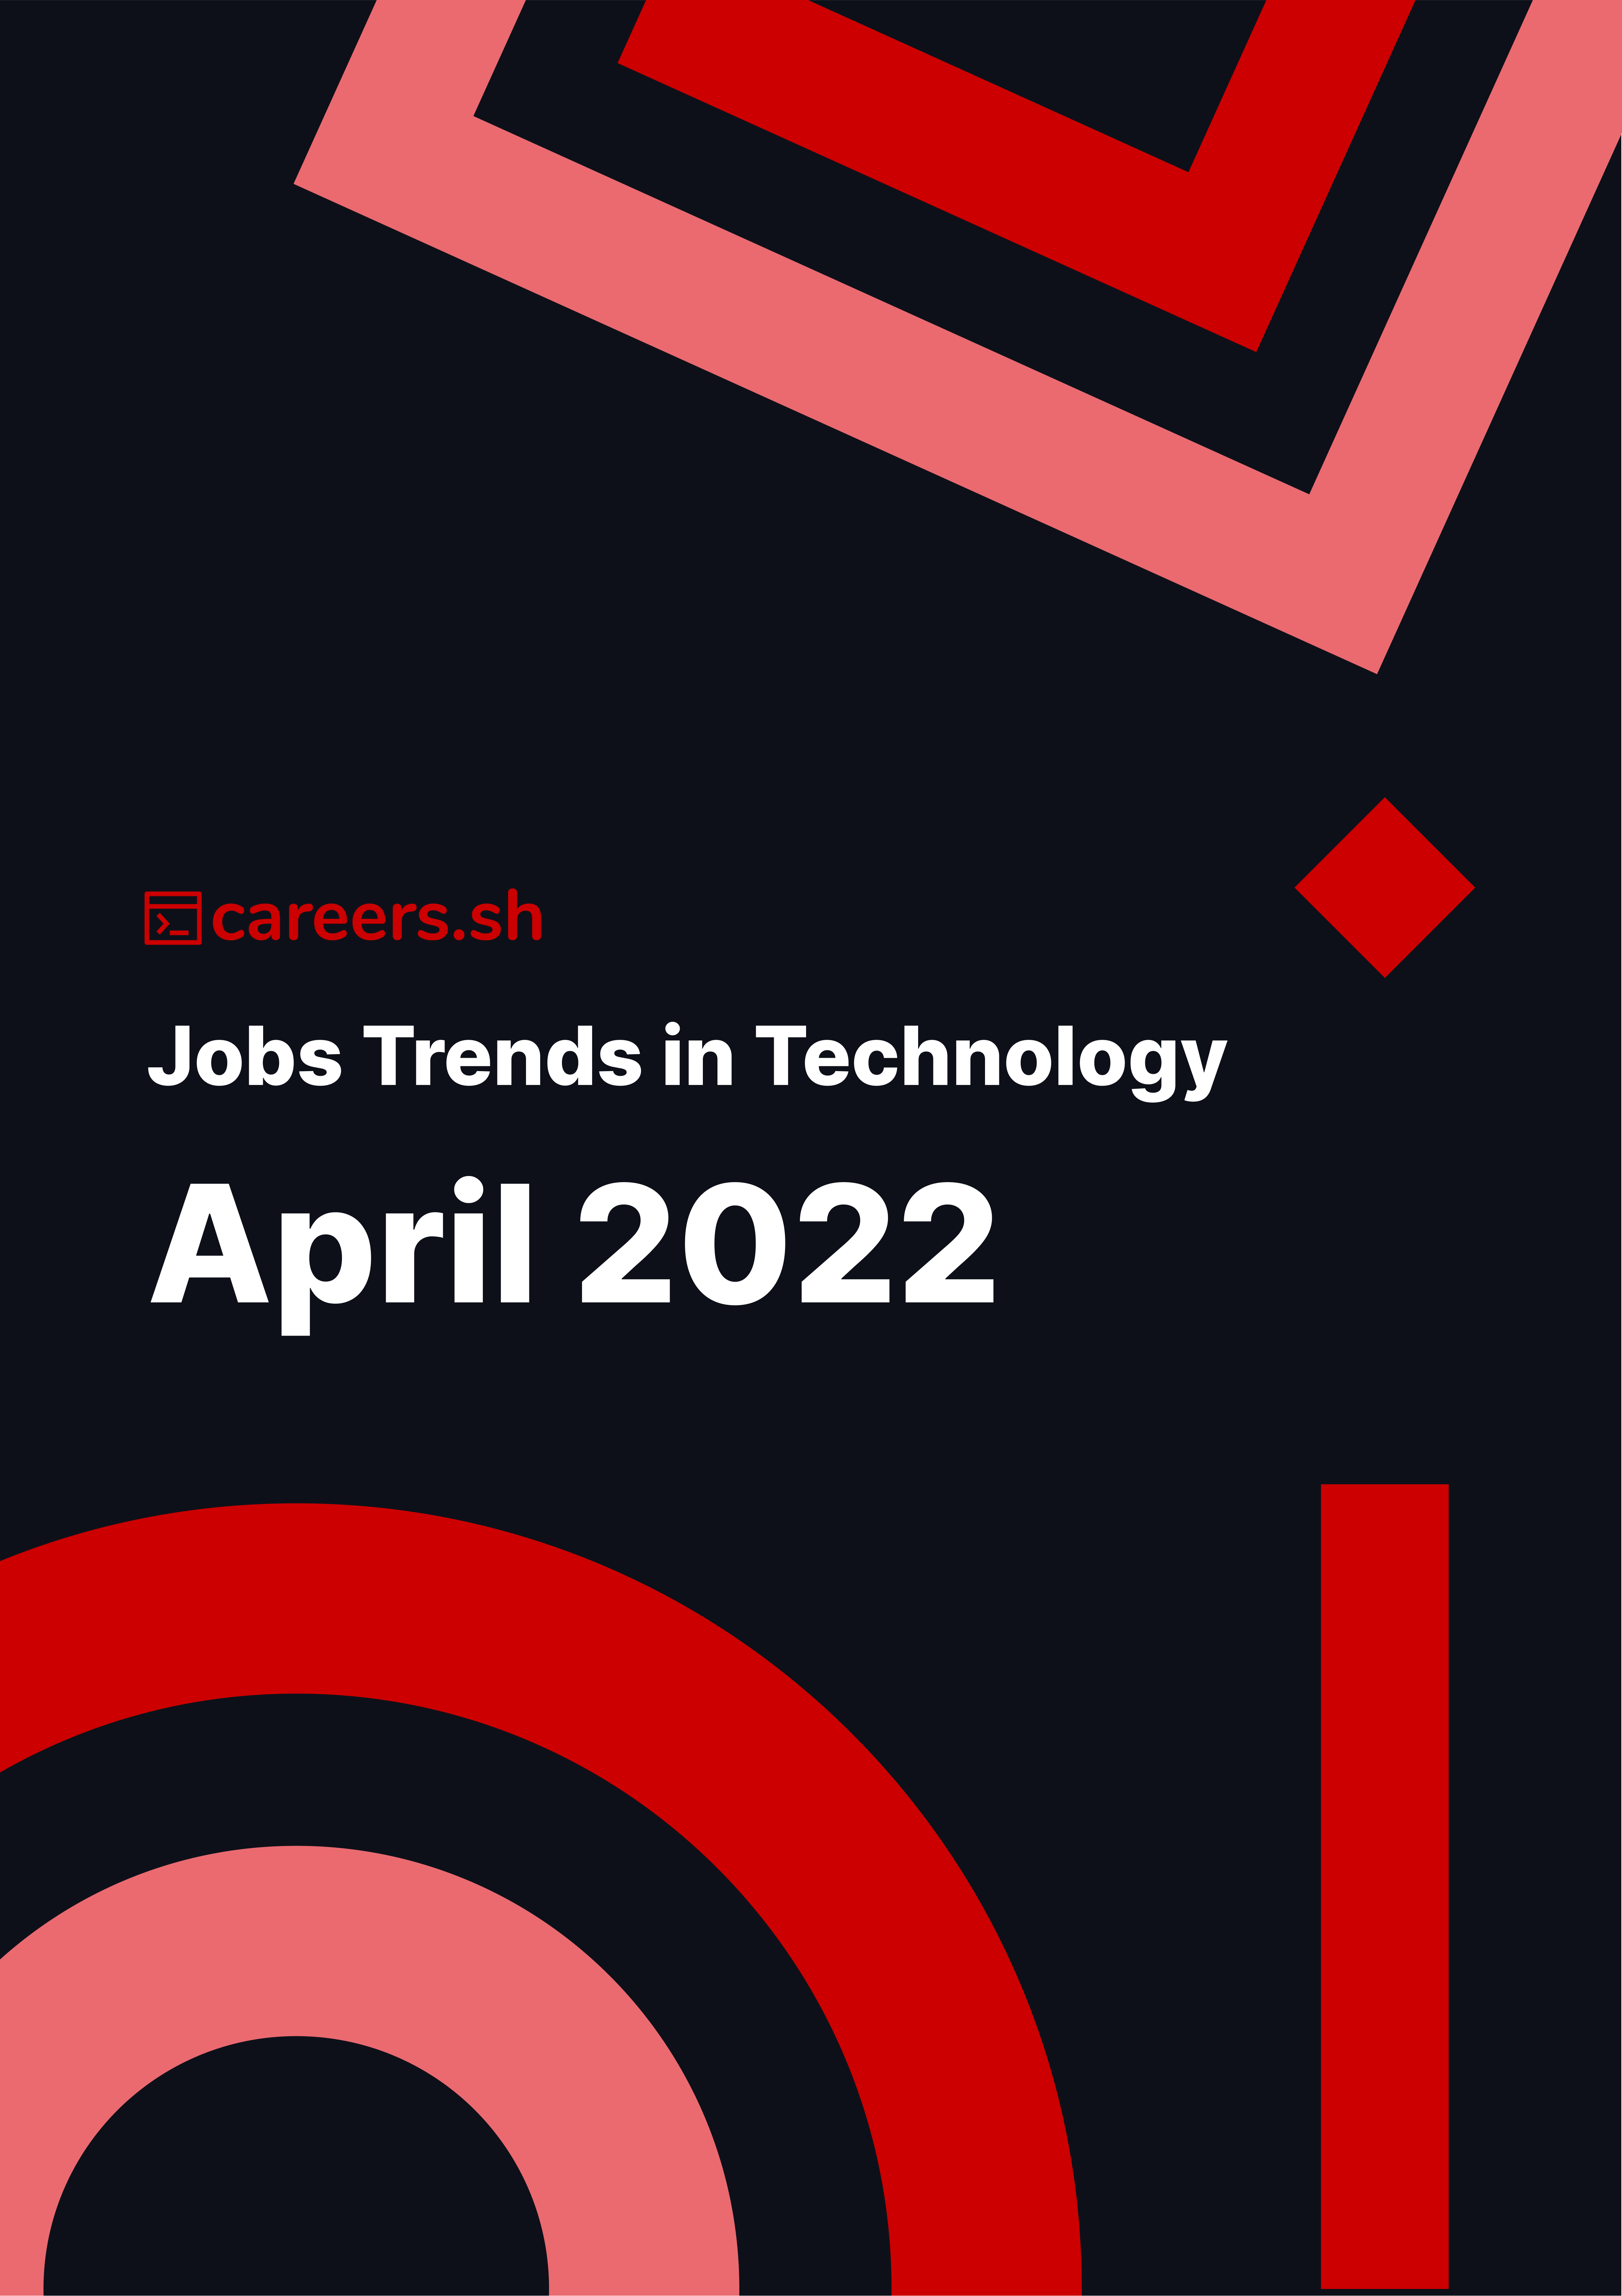 Careers.sh - April 2022